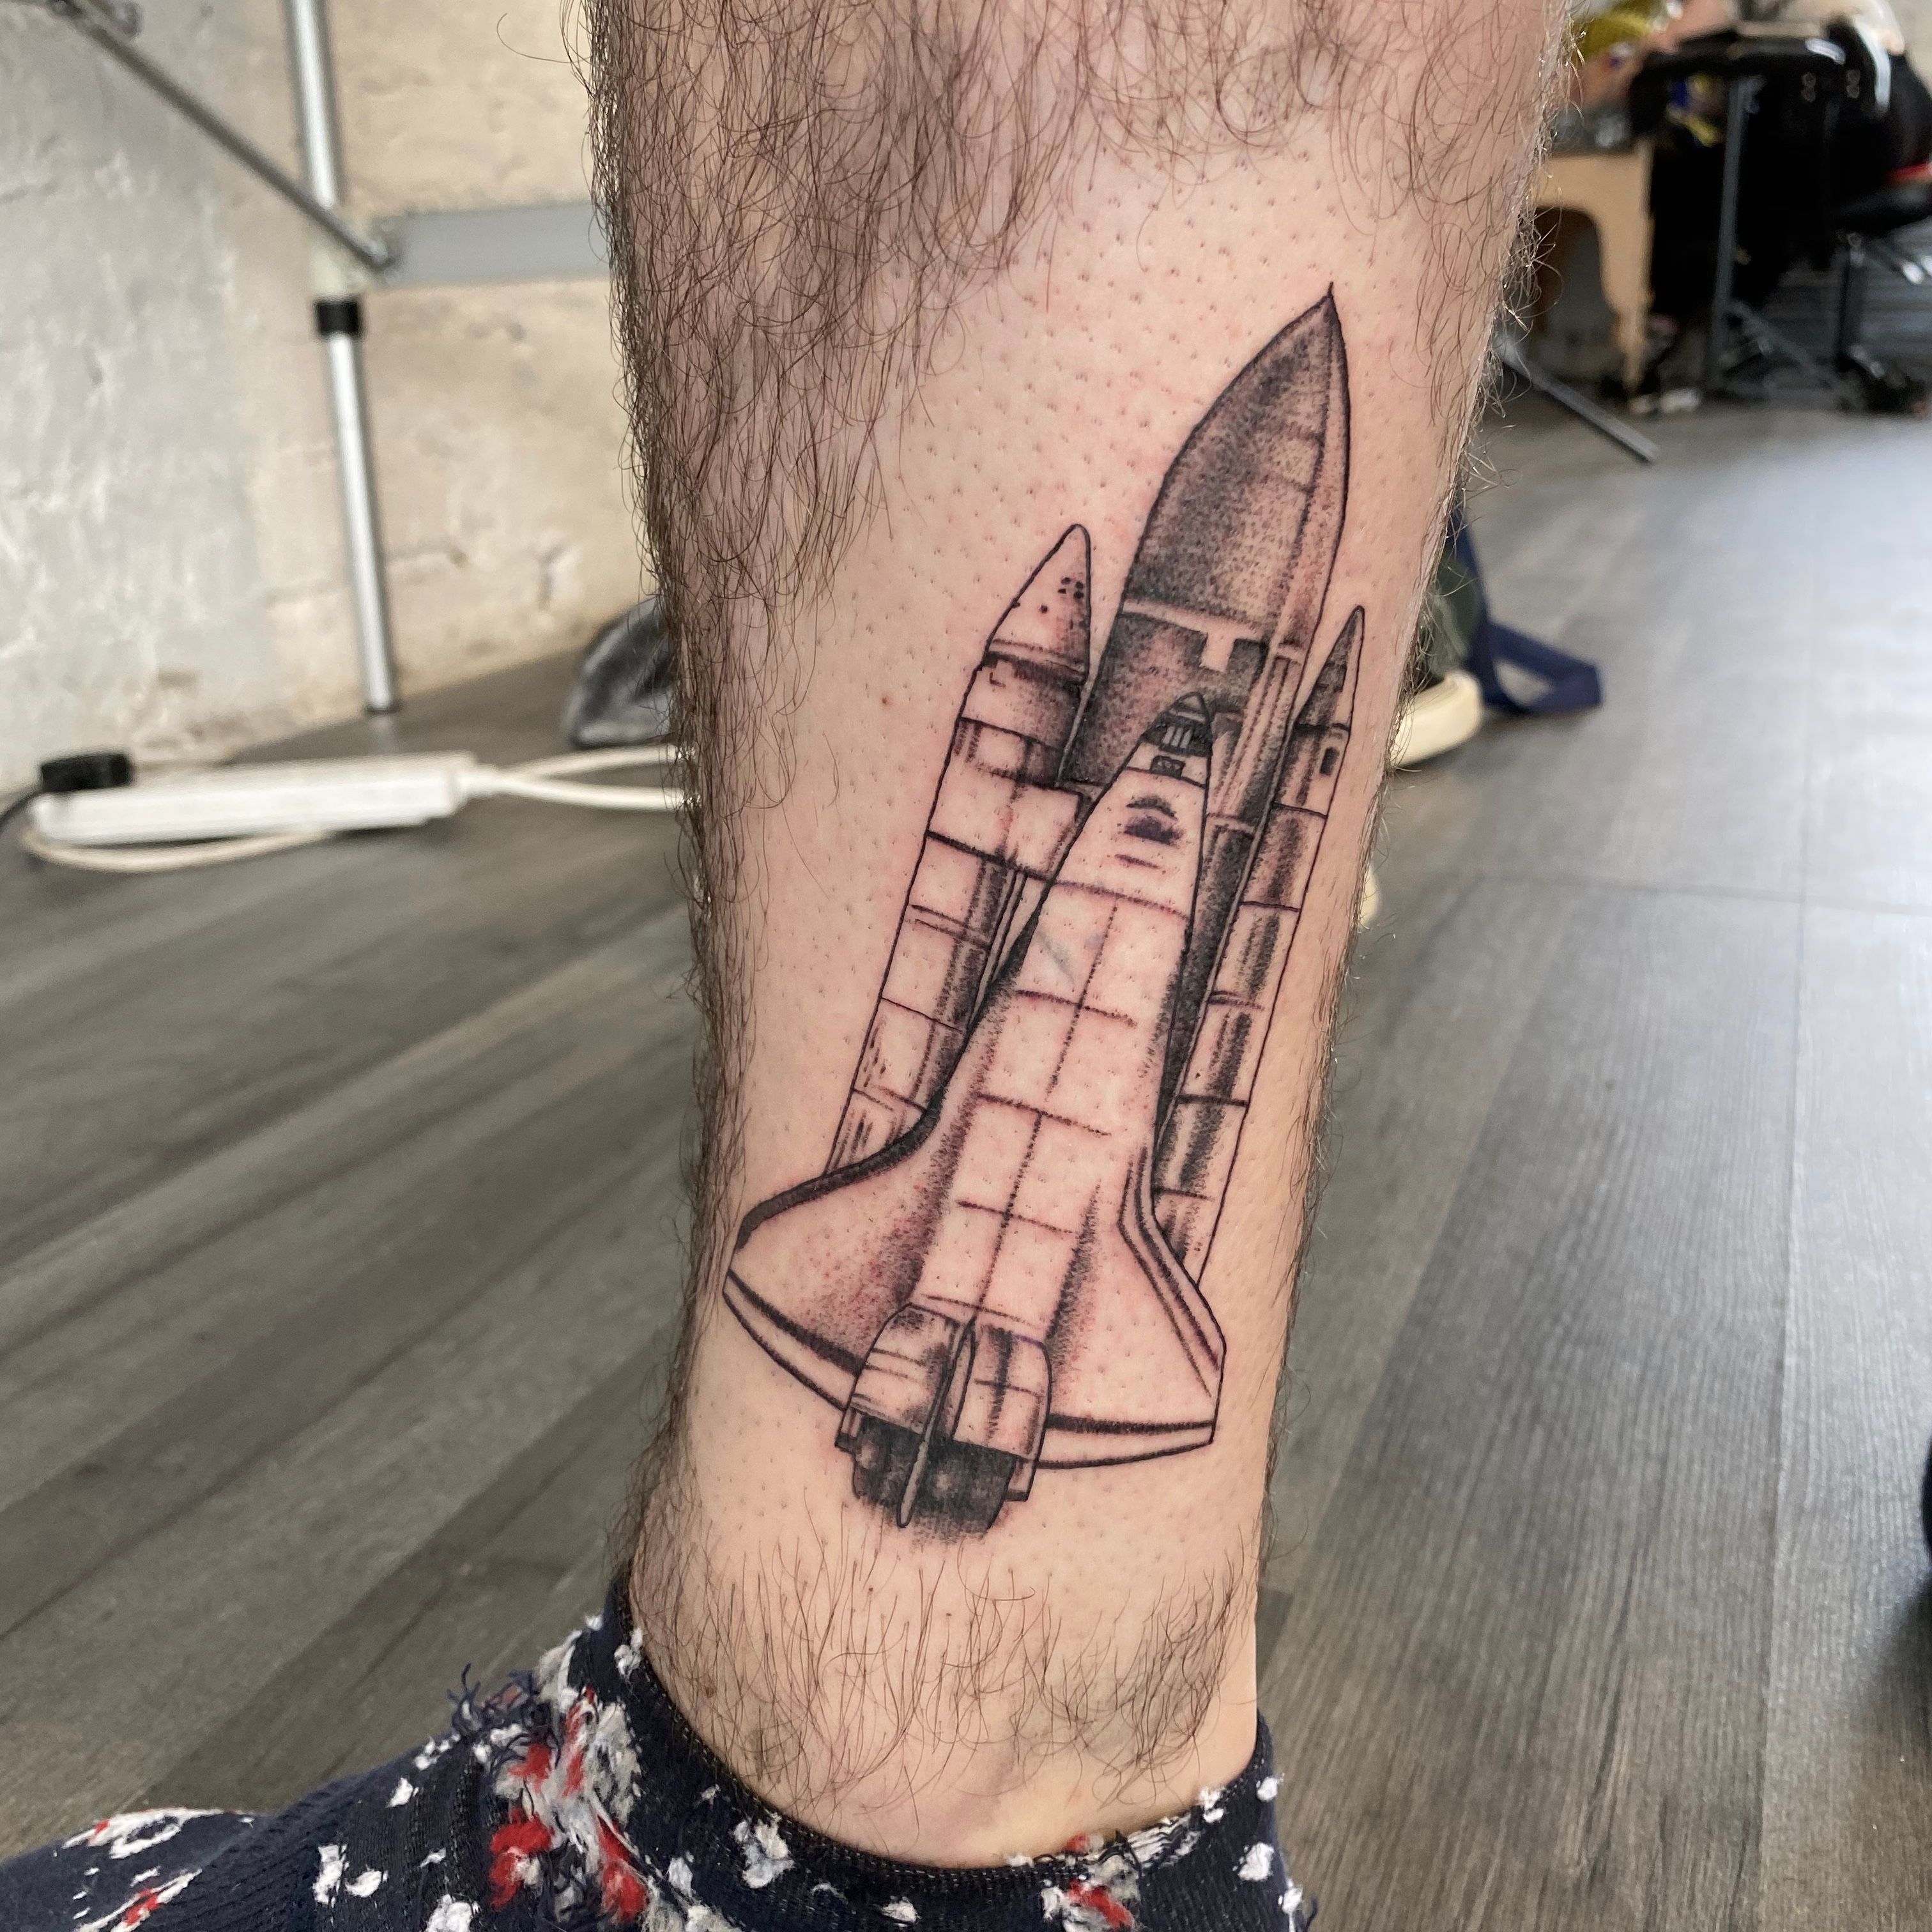 Space shuttle tattoo  Tattoos Nerd tattoo Body art tattoos